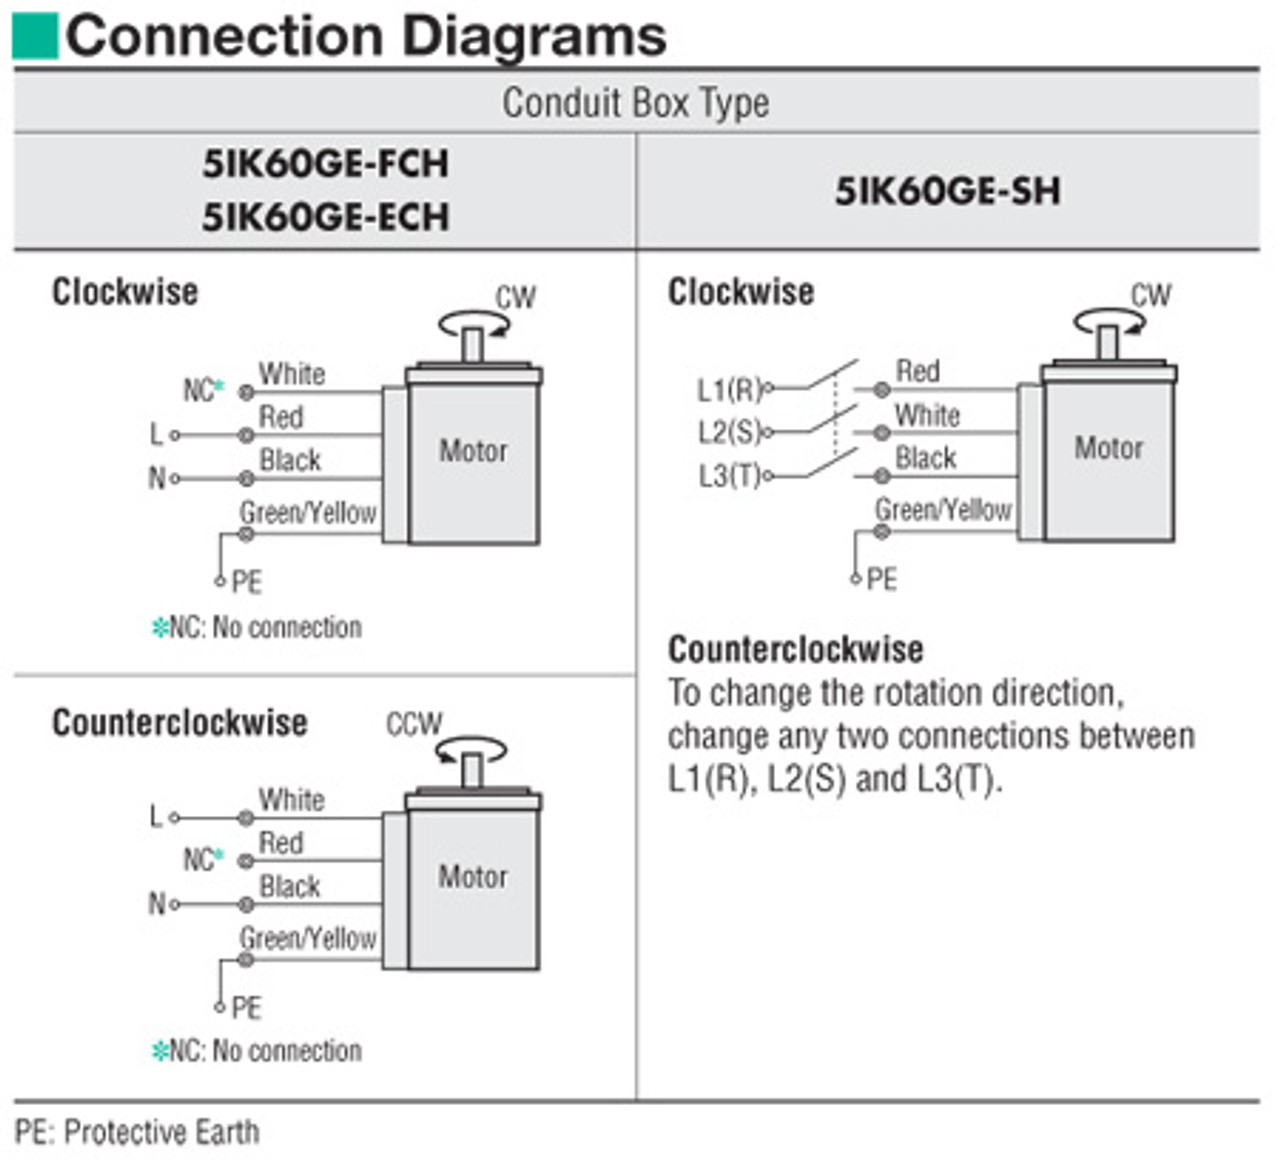 5IK60GE-ECH / 5GE12.5SA - Connection